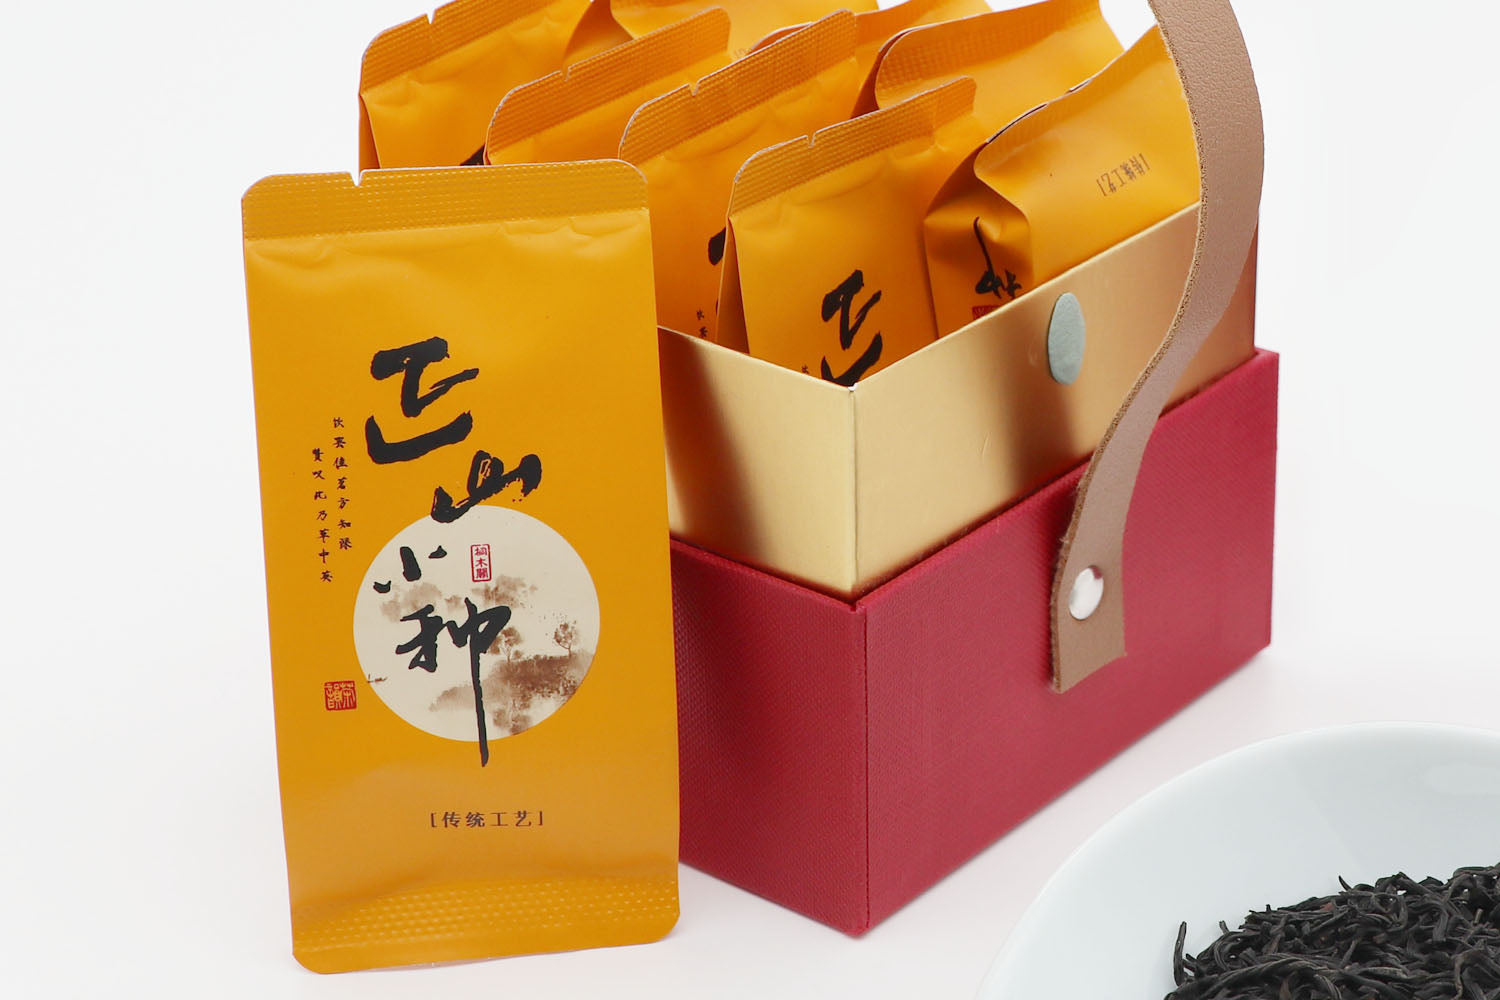 Zheng Shan Xiao Zhong (Lapsang Souchong) Black Tea